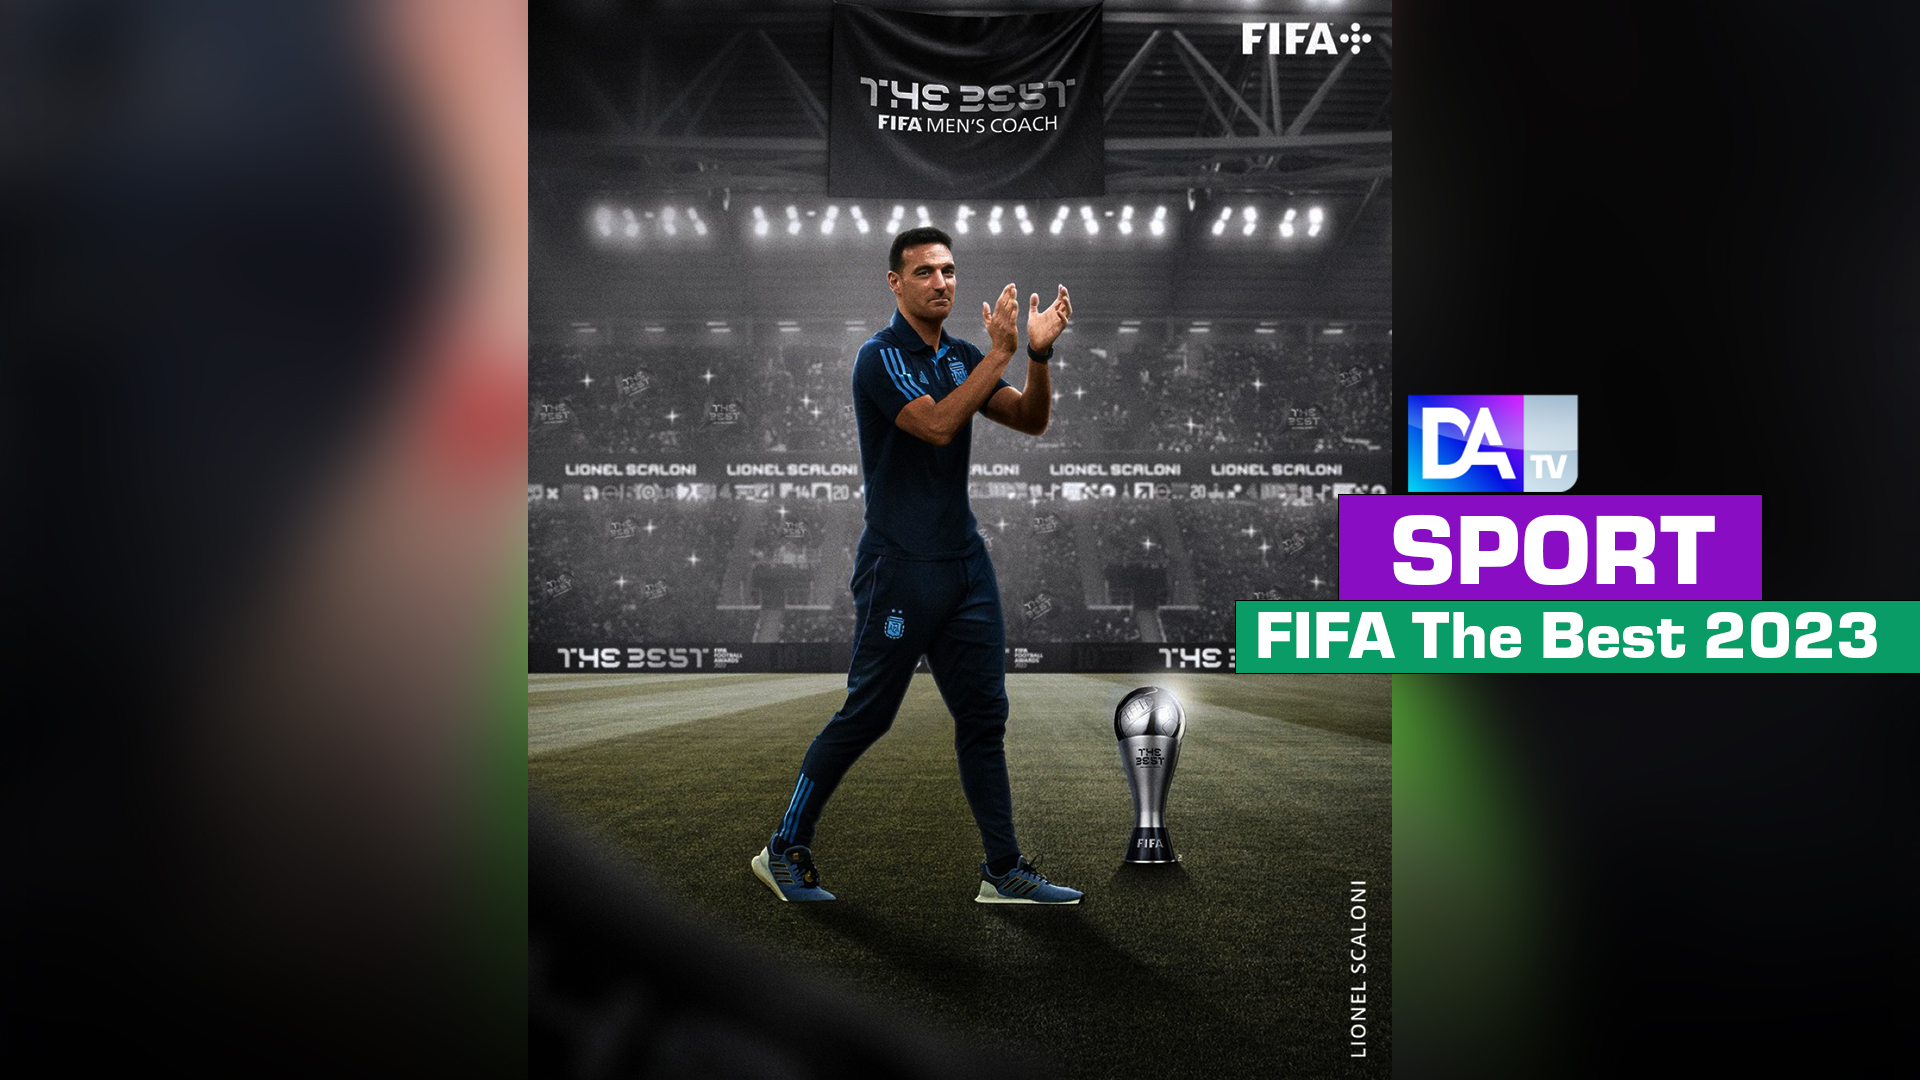 FIFA The Best : Champion du monde avec l’Argentine, Scaloni désigné meilleur entraîneur